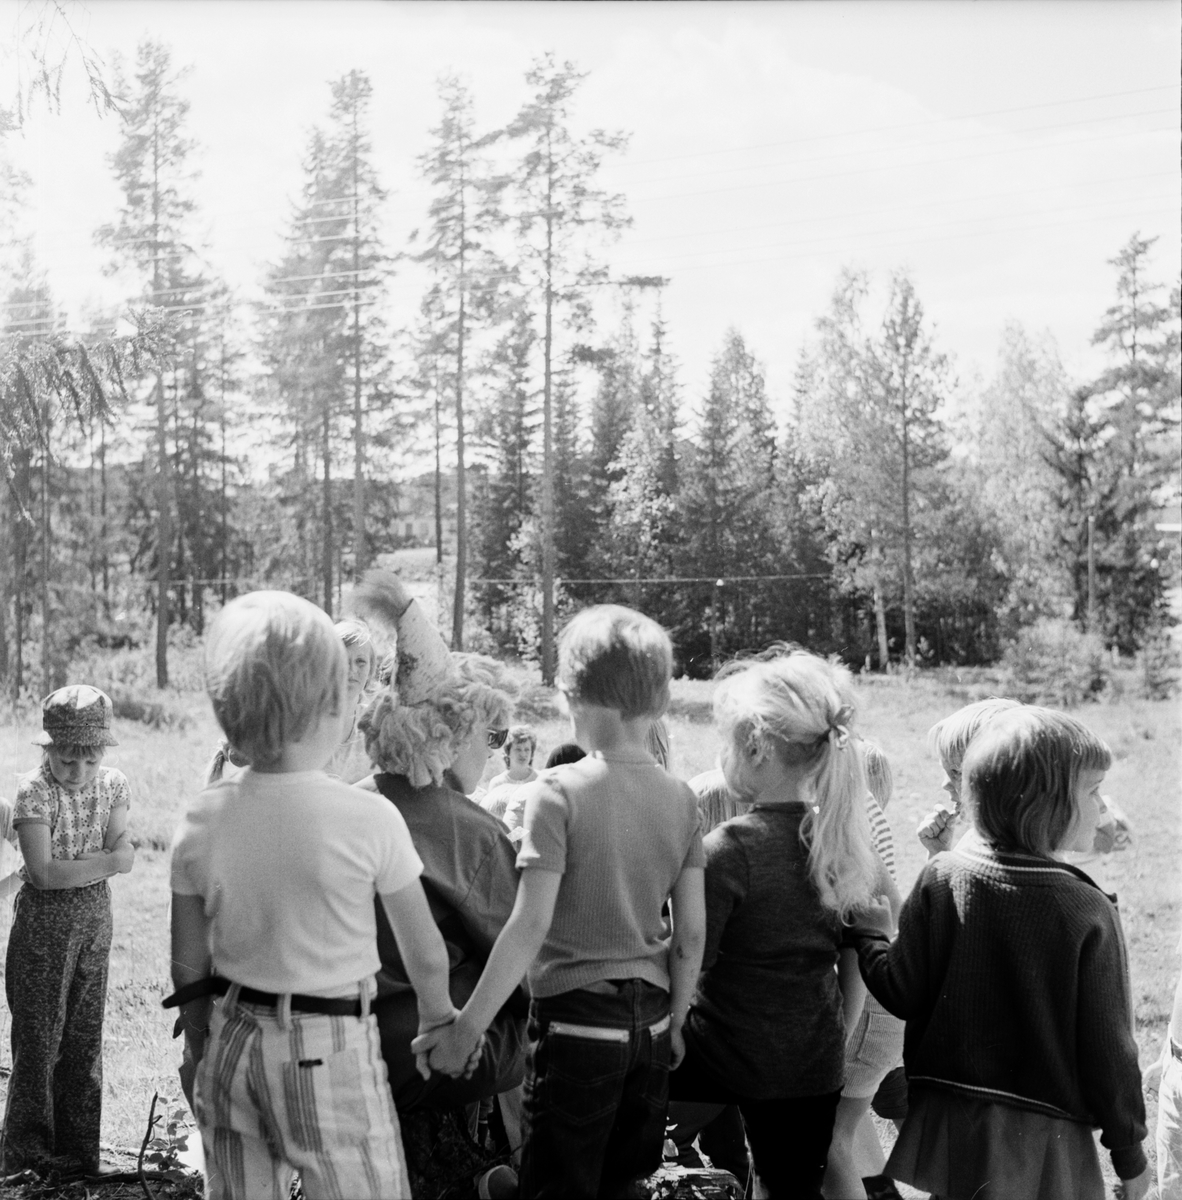 Arbrå,
Skogsmulle-skolan i Arbrå avslutas,
Juni 1972